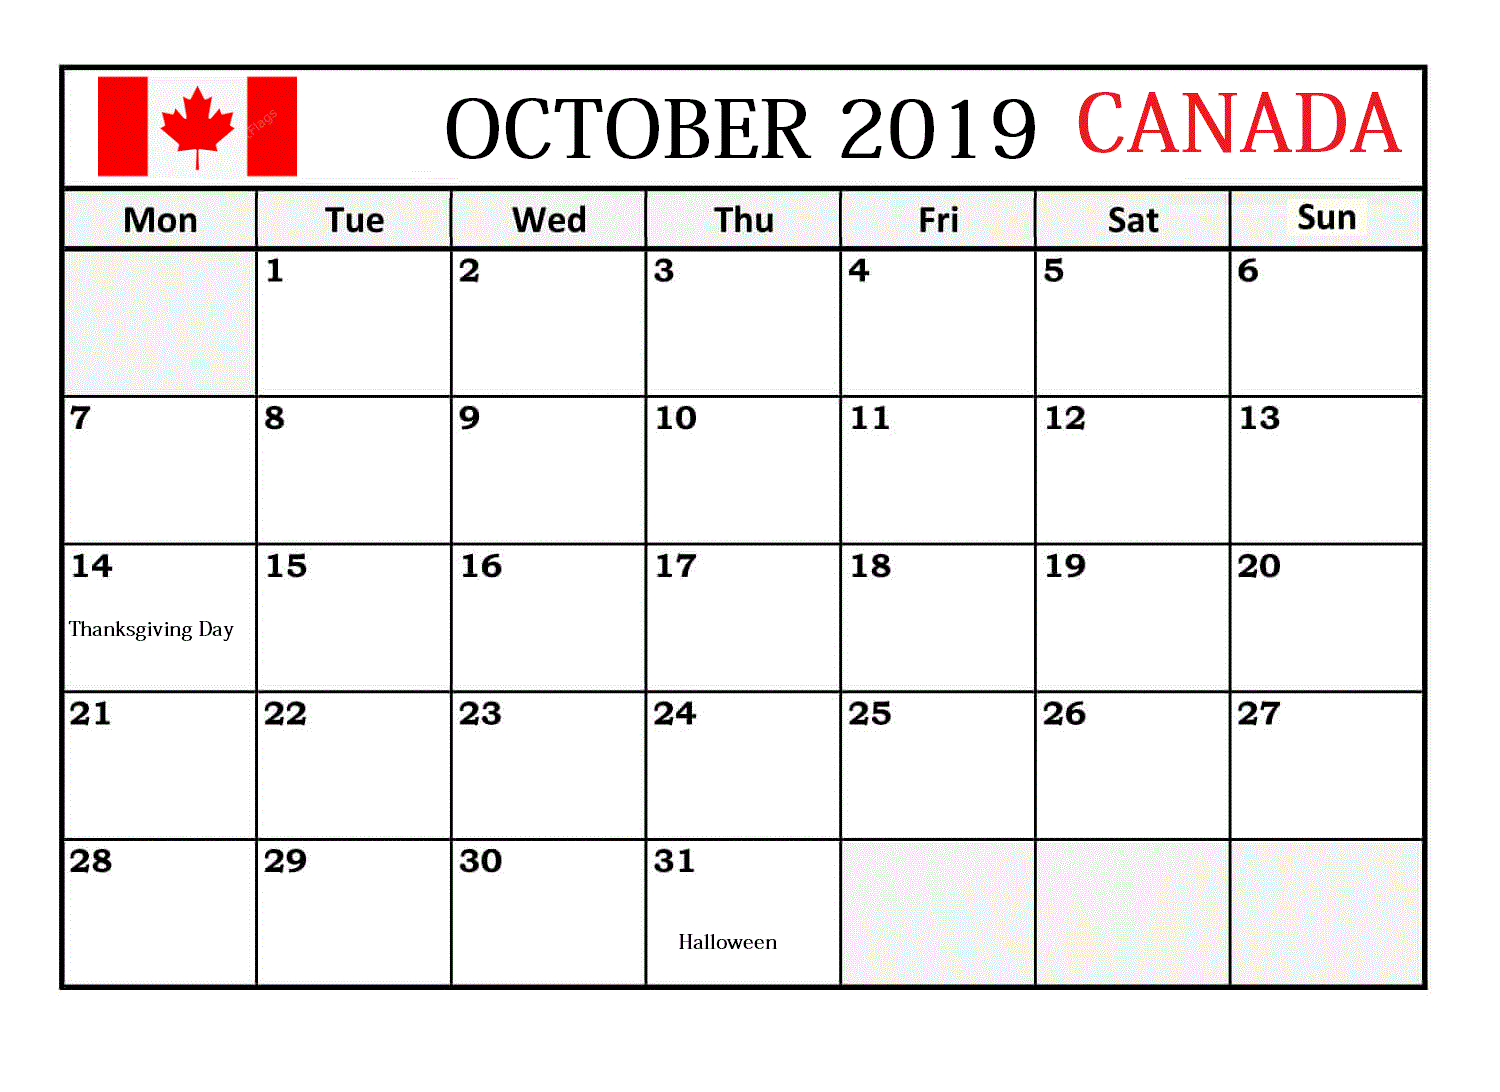 October 2019 Calendar Canada